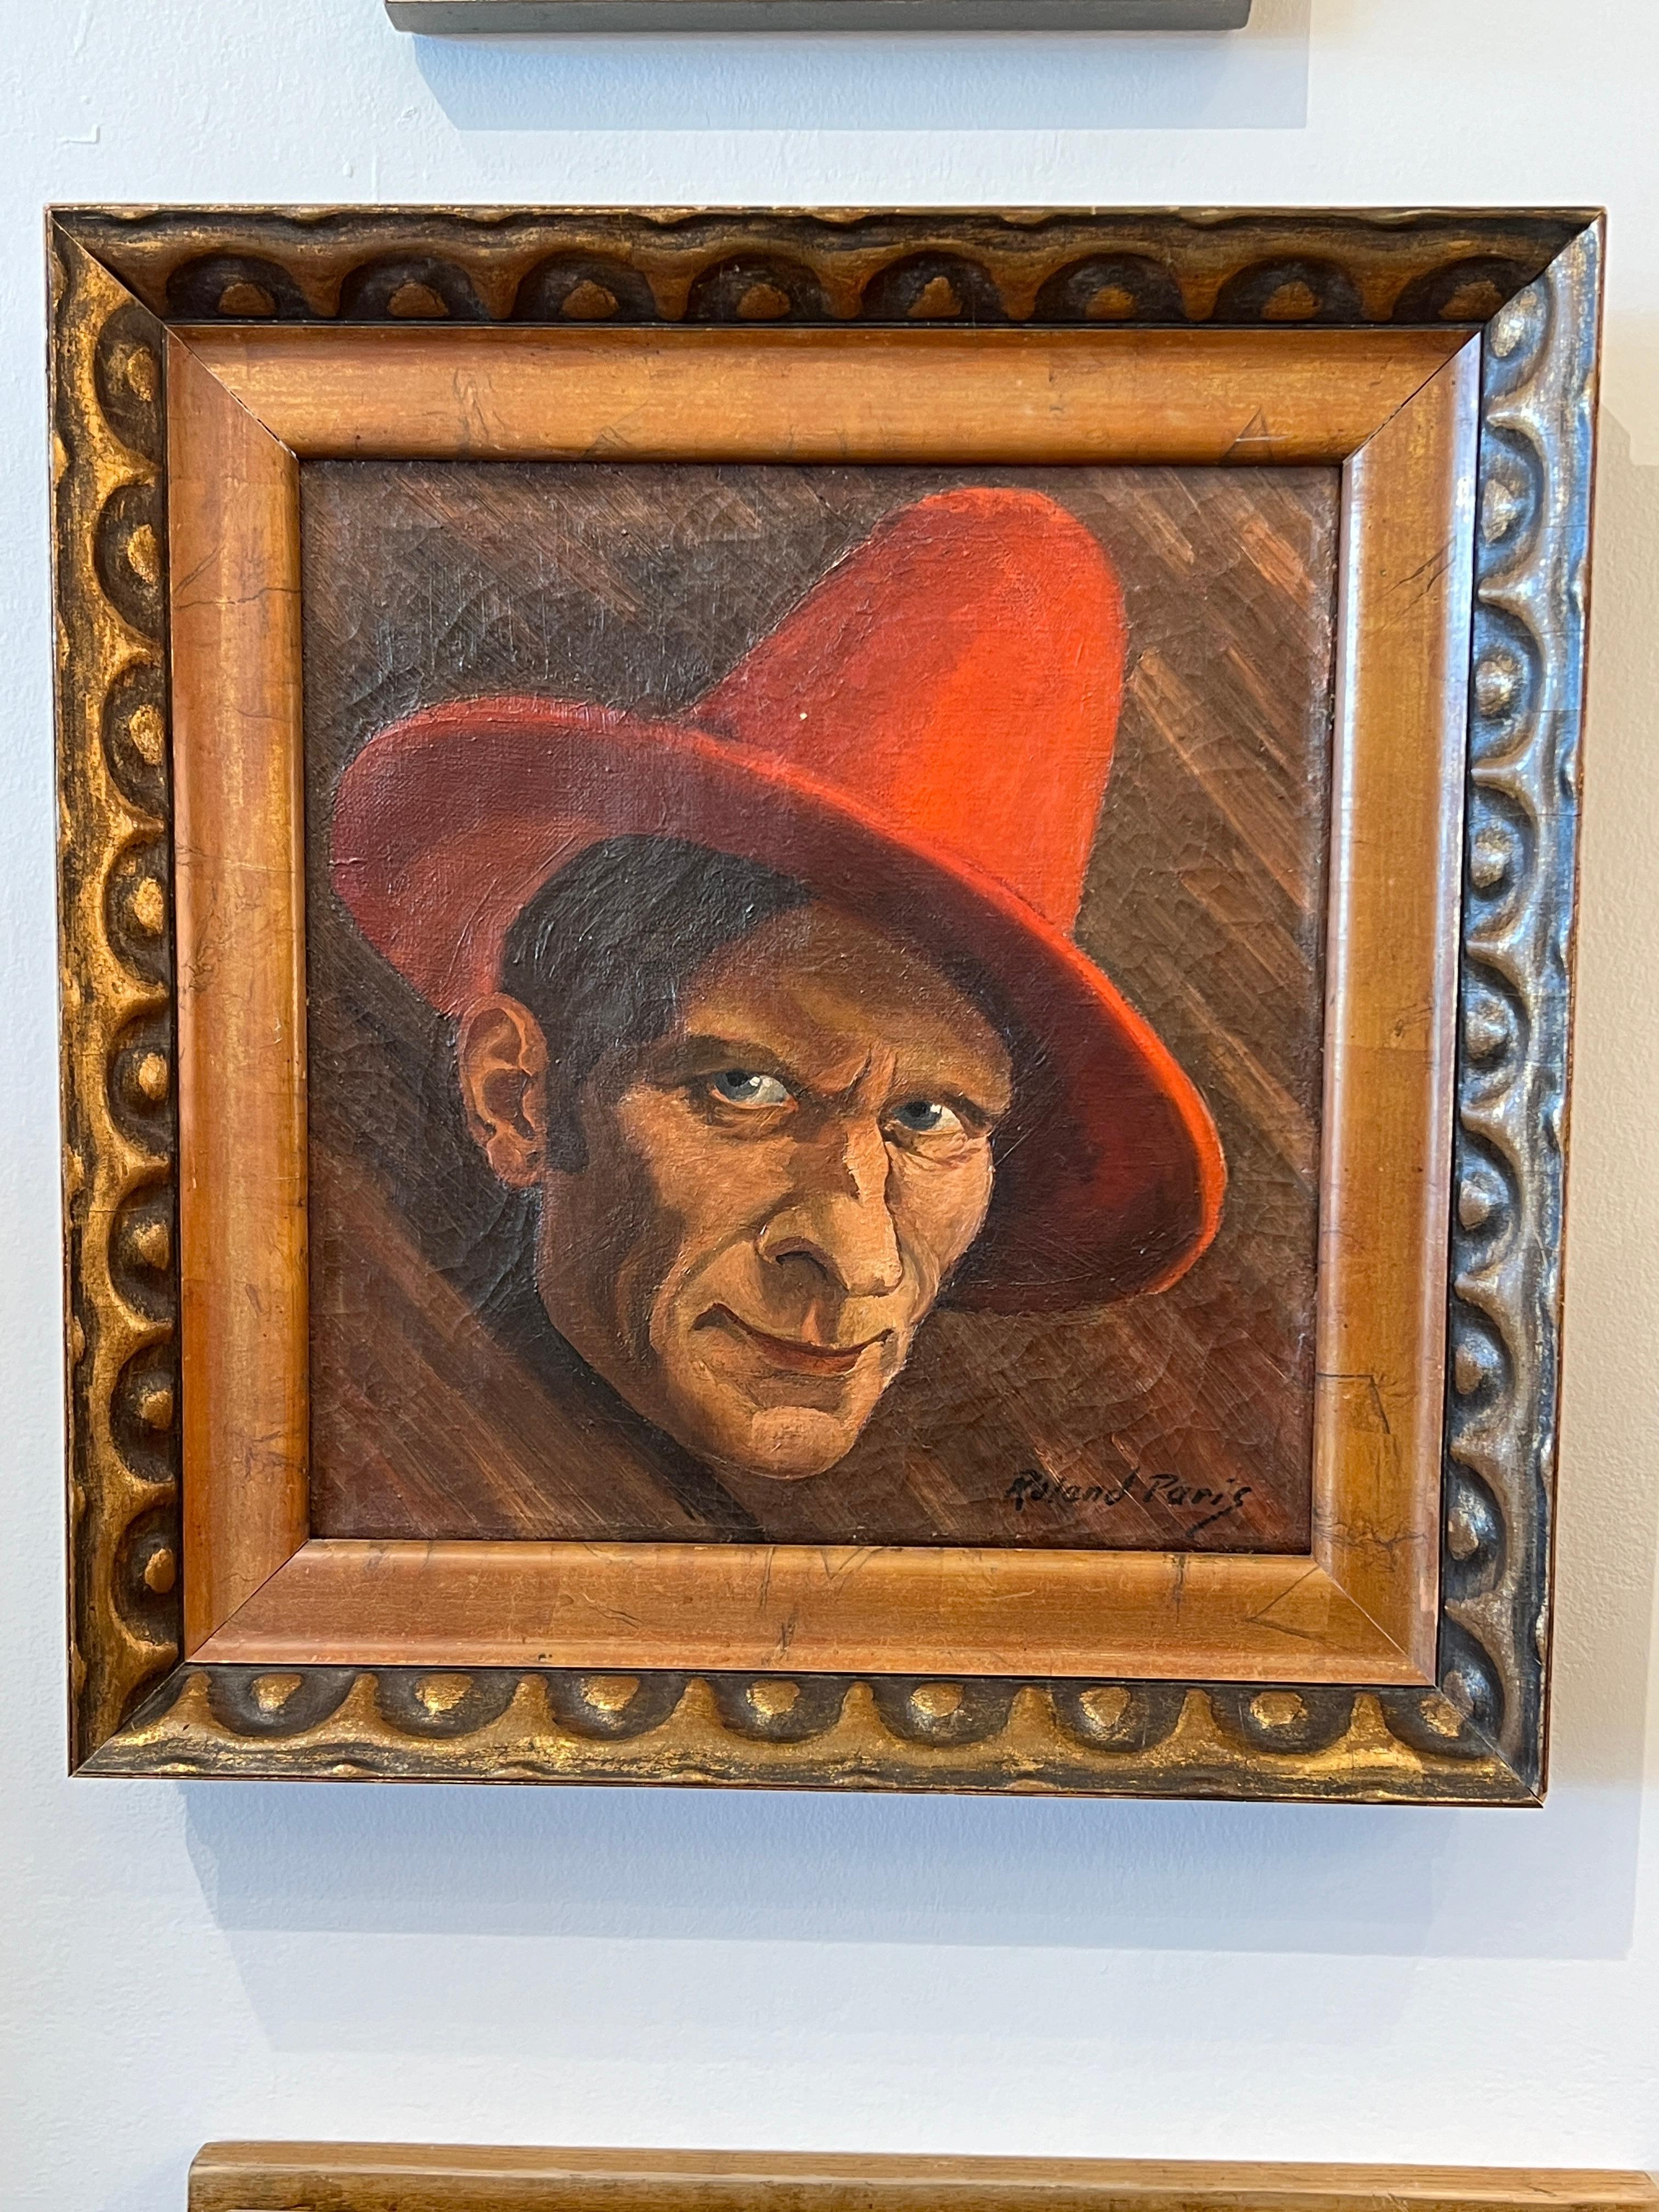 Self-Portrait of Roland Paris wearing a Red Hat.

Signature: Roland Paris